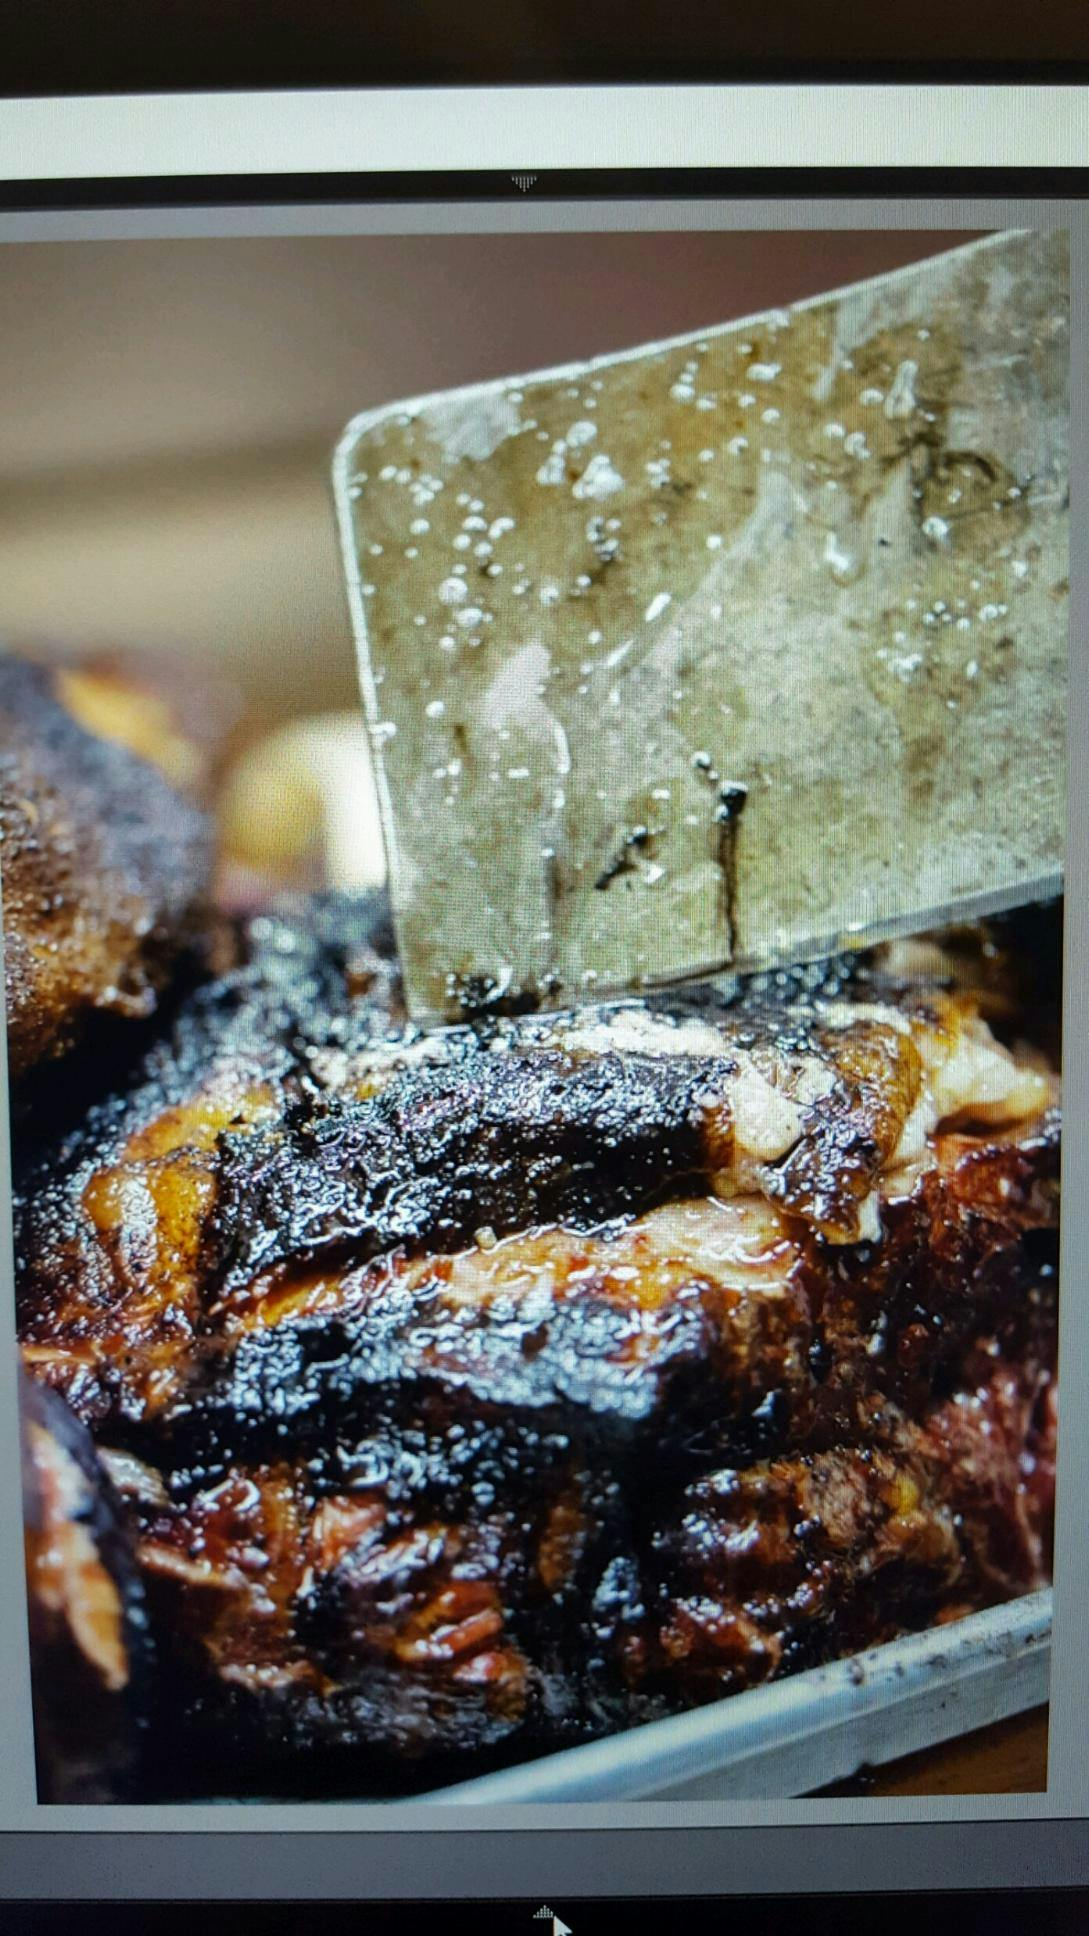 roasted steak